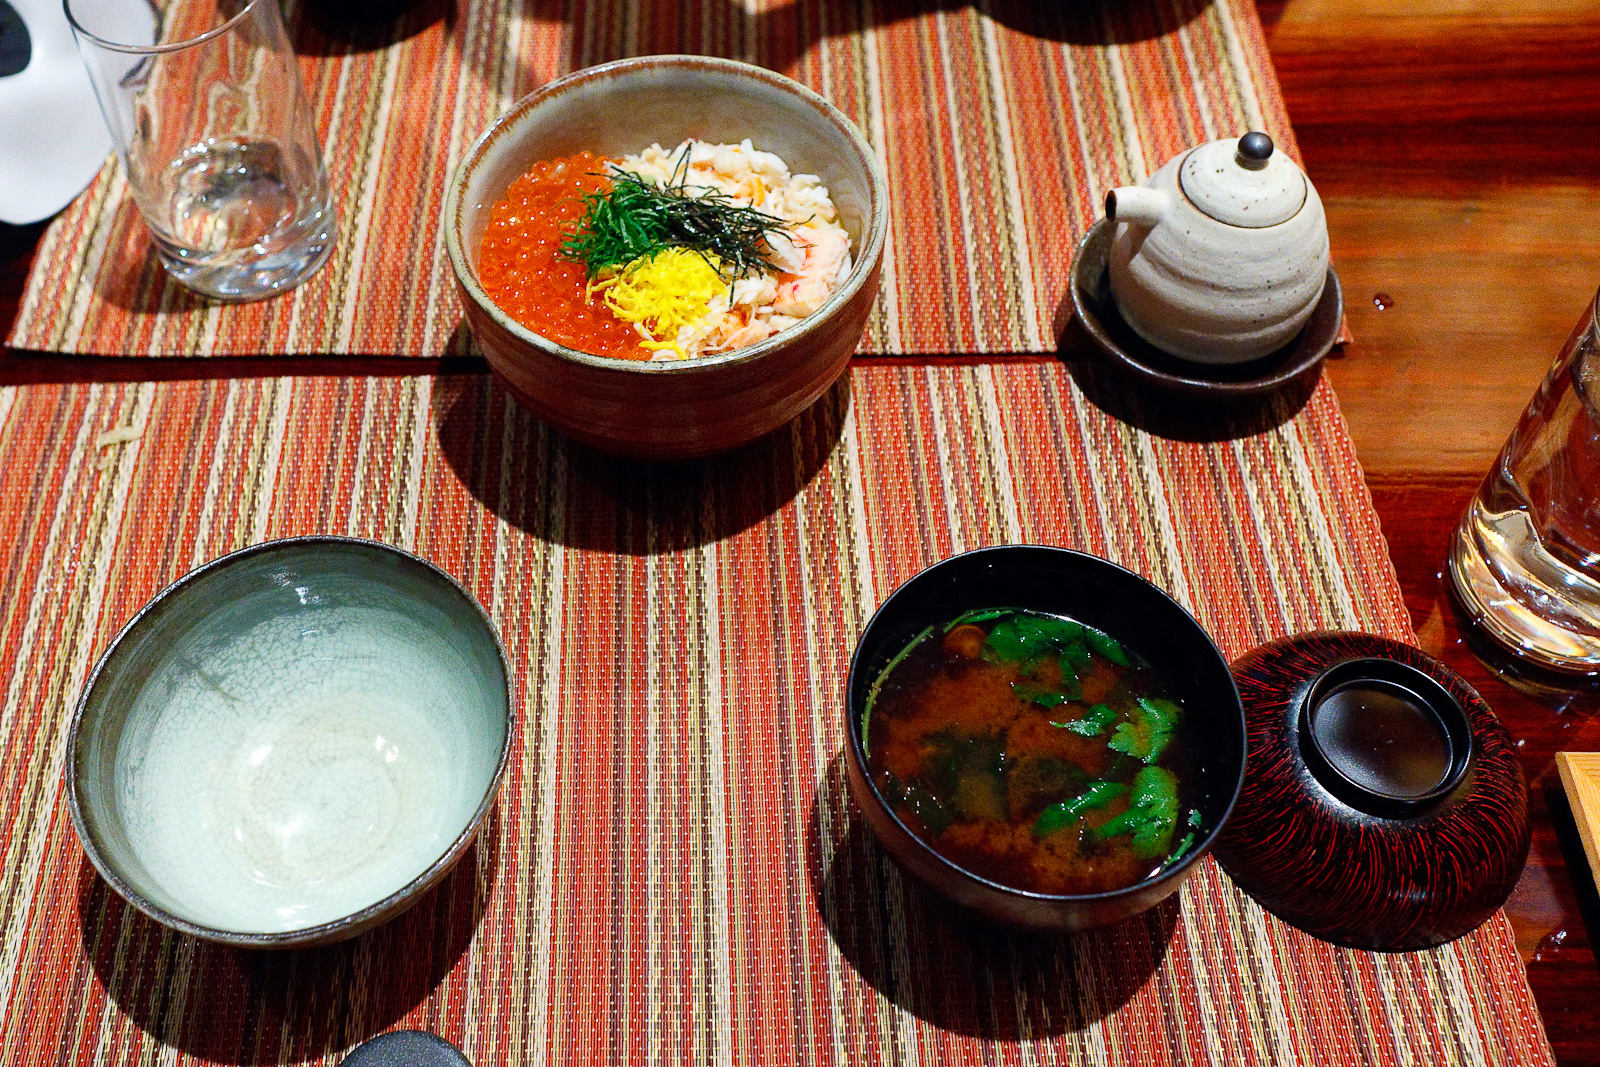 Kani ikura don, Alaskan king crab and dashi-marinated salmon roe over rice ($29) with Akadashi red miso soup ($5)